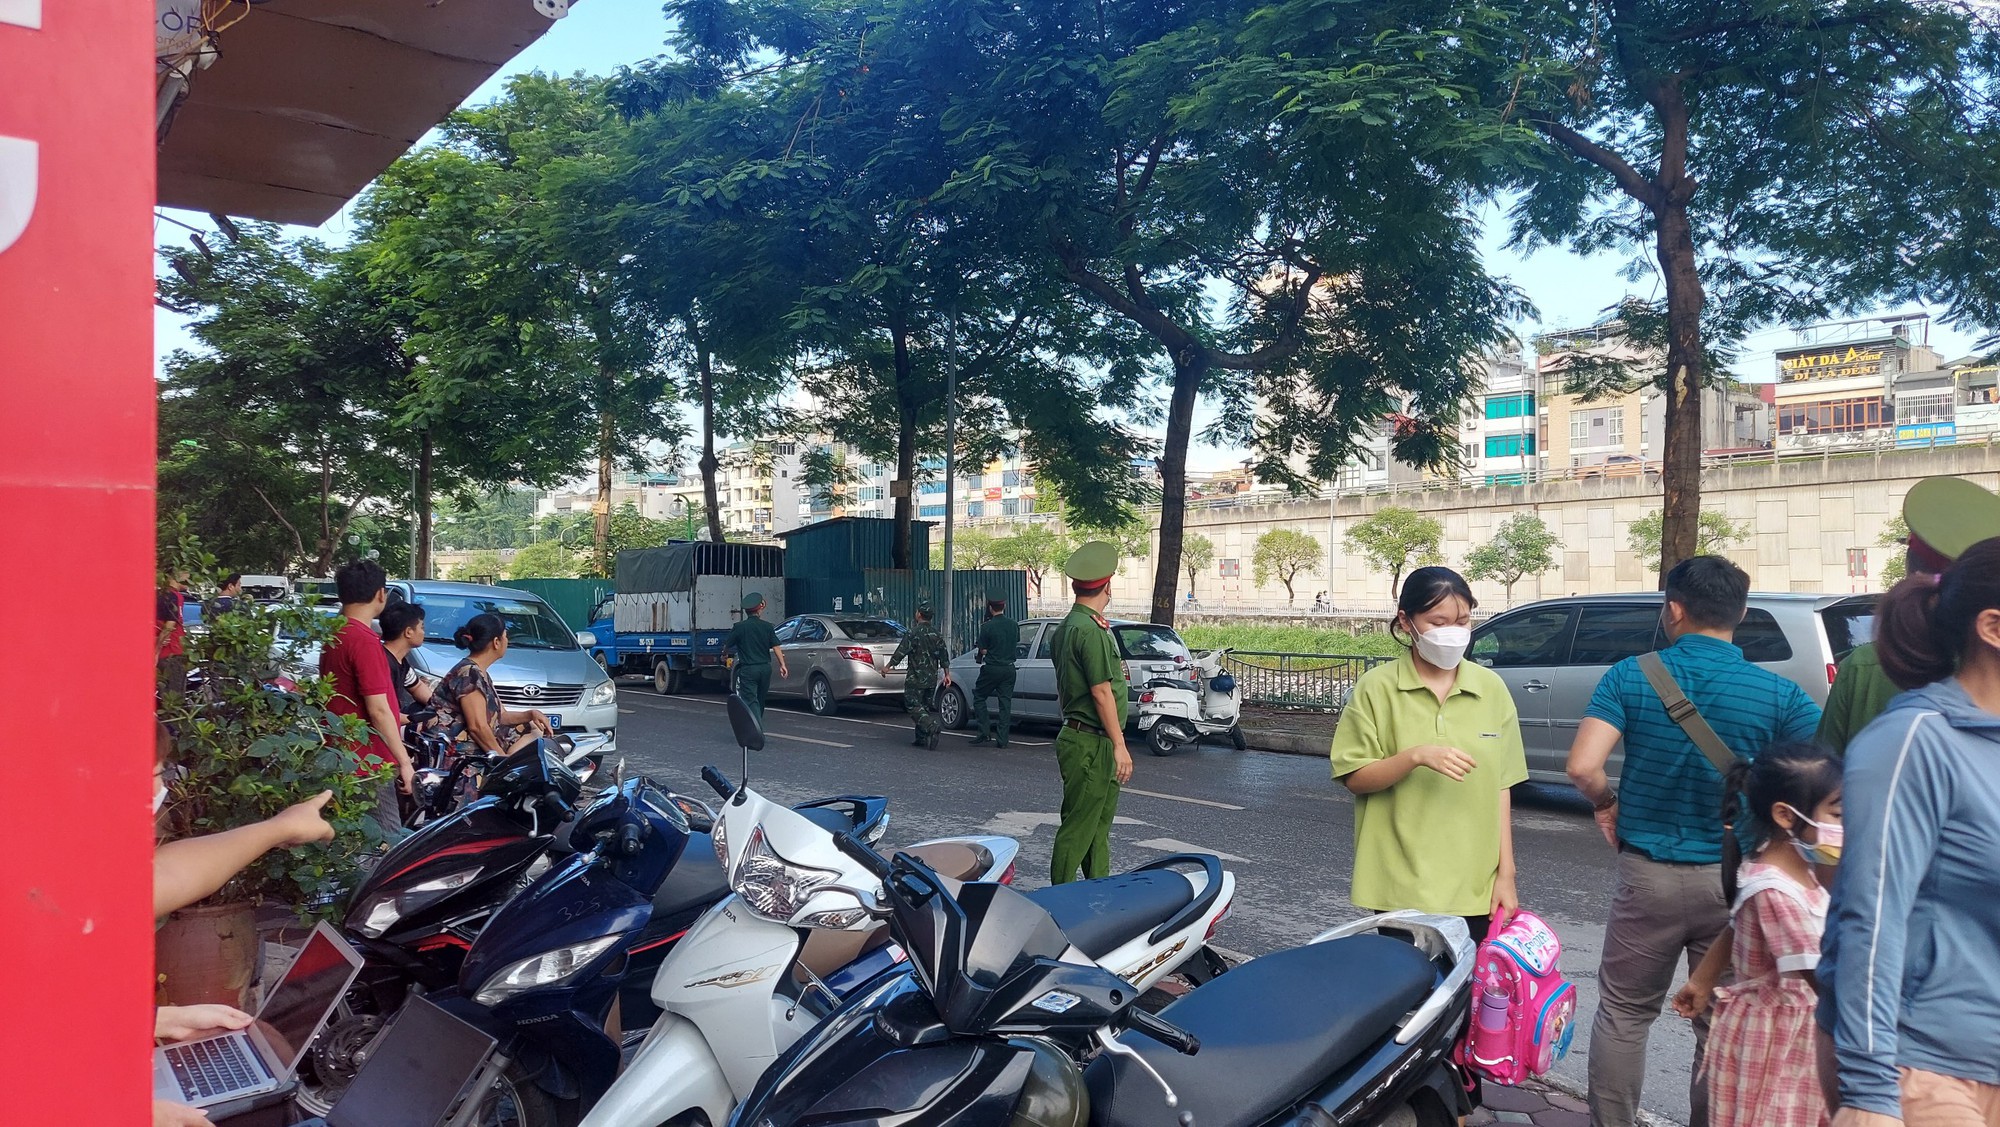 Hà Nội: Cảnh sát liên tục ra vào hiện trường vụ cháy ở phường Quan Hoa - Ảnh 6.